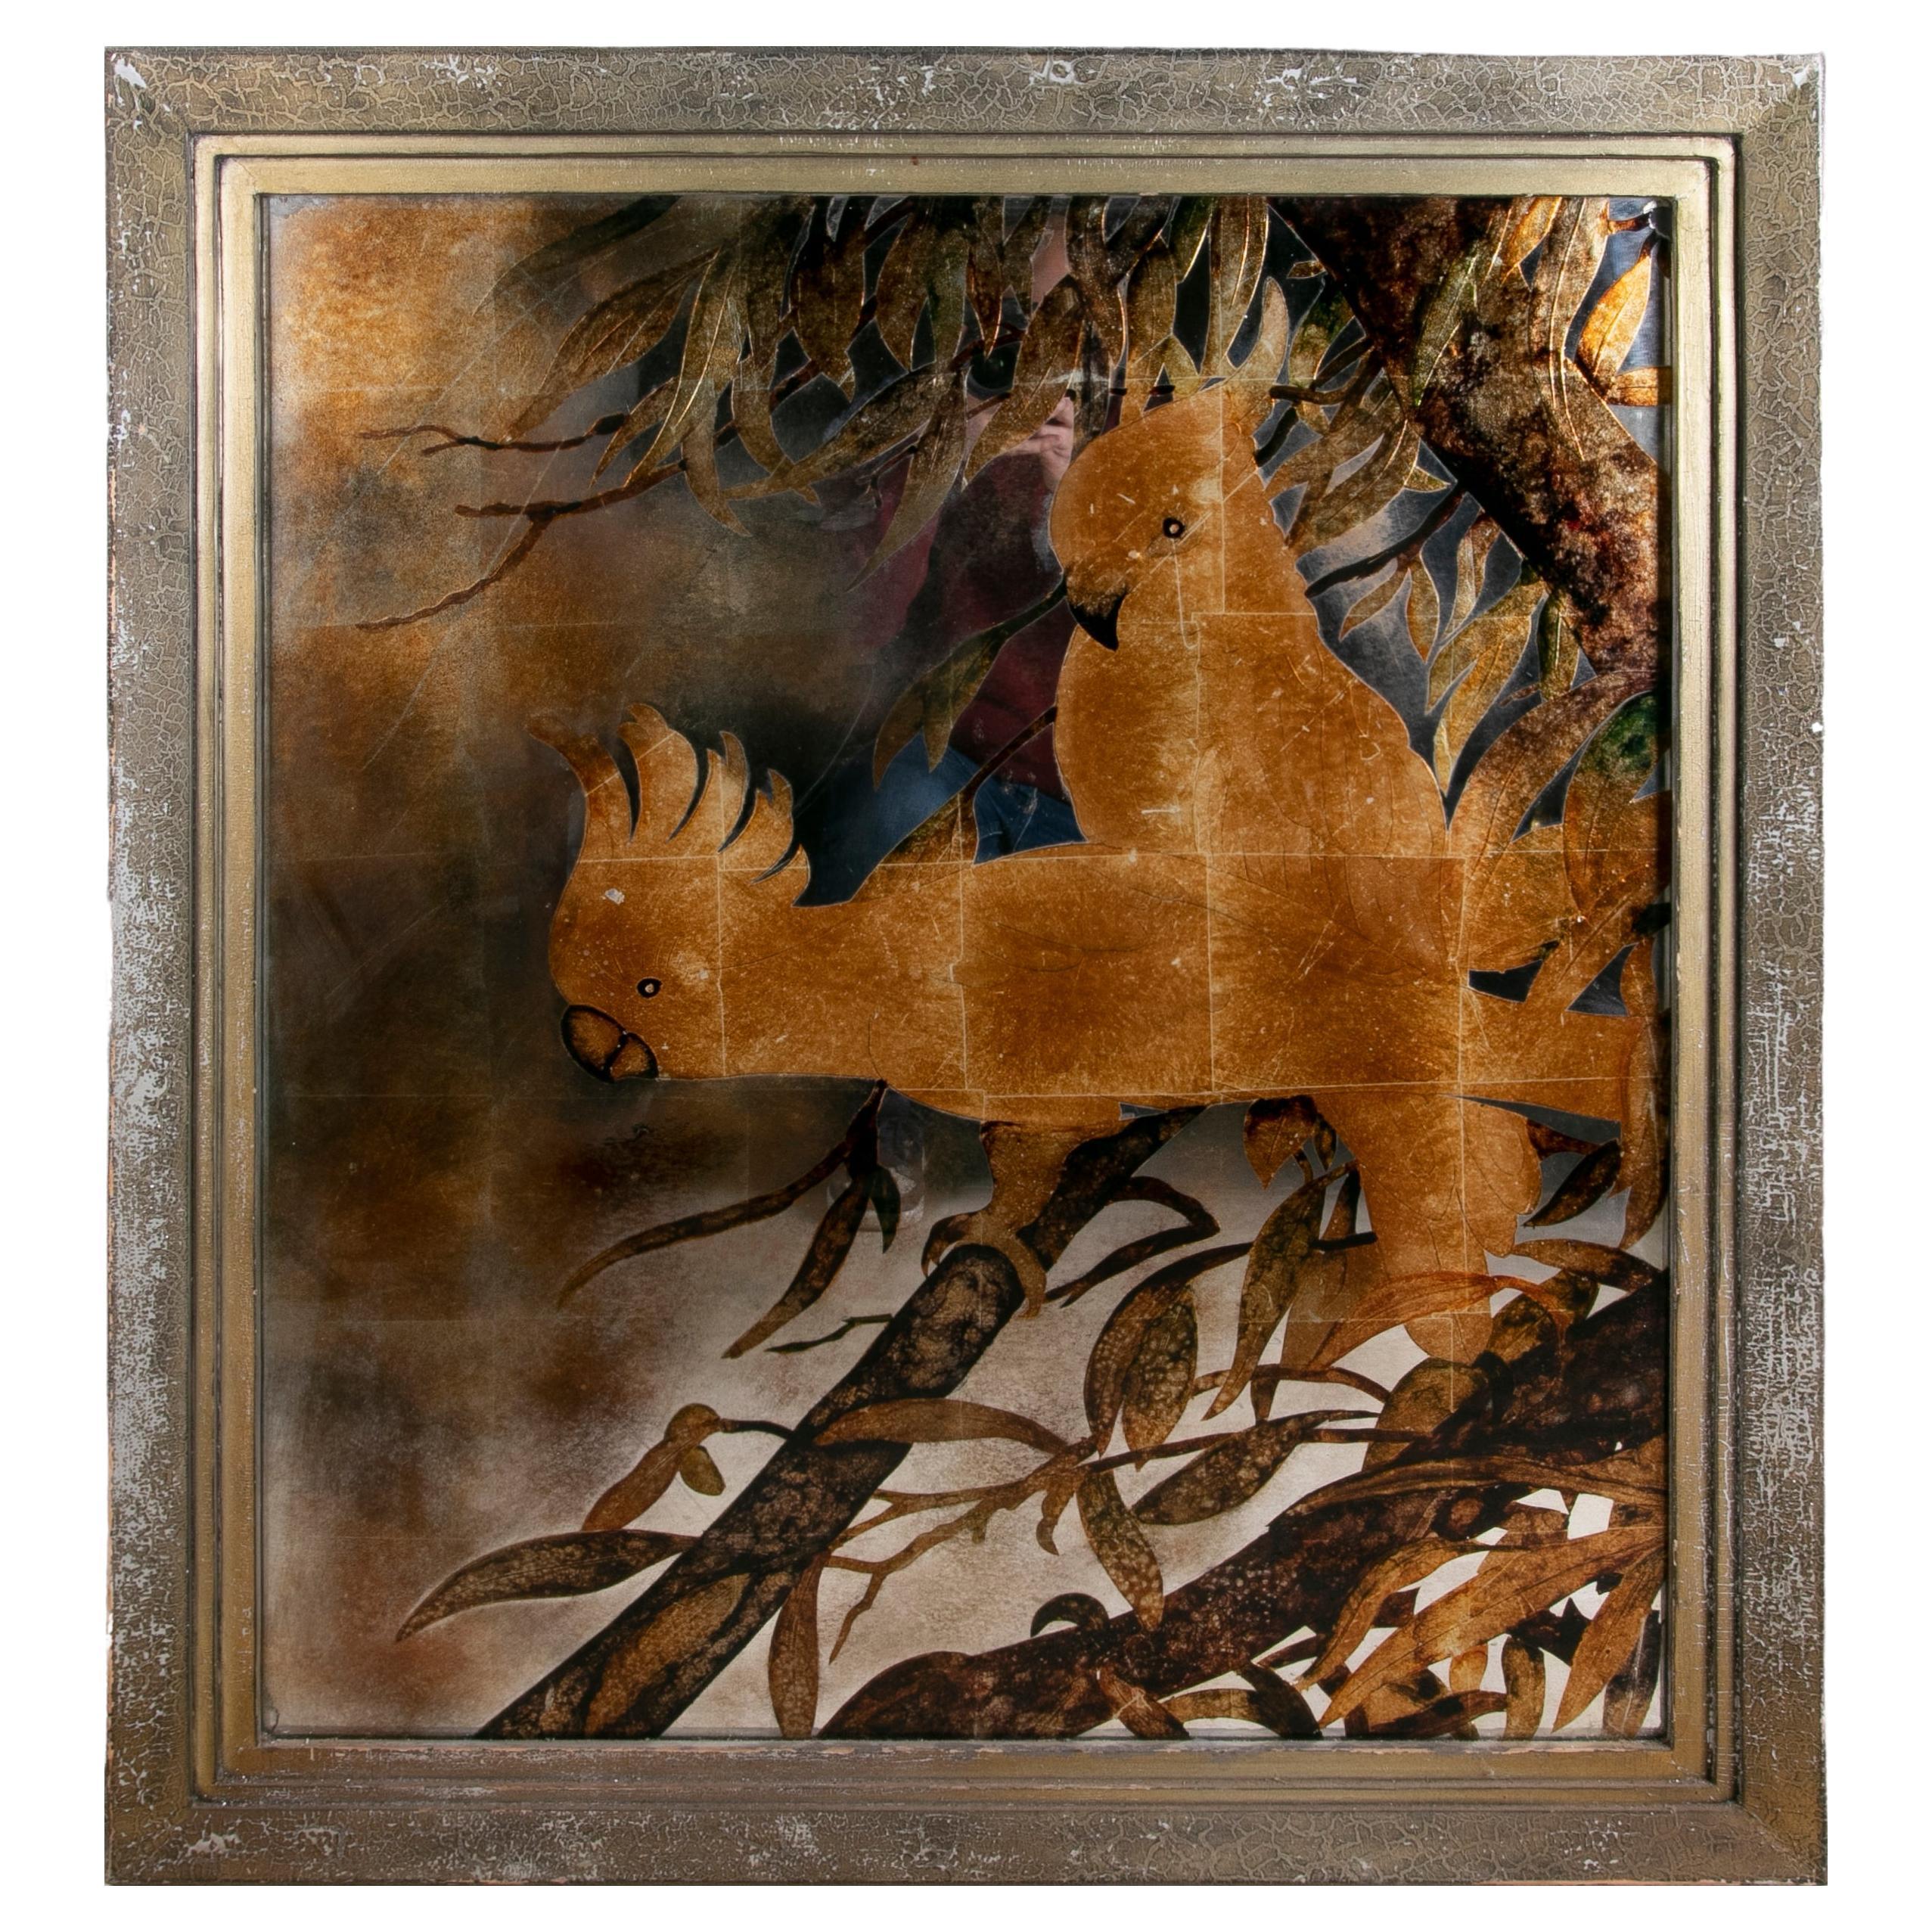 Gerahmtes, handbemaltes Bild auf Spiegel mit Papageien im Thema eines Baumes